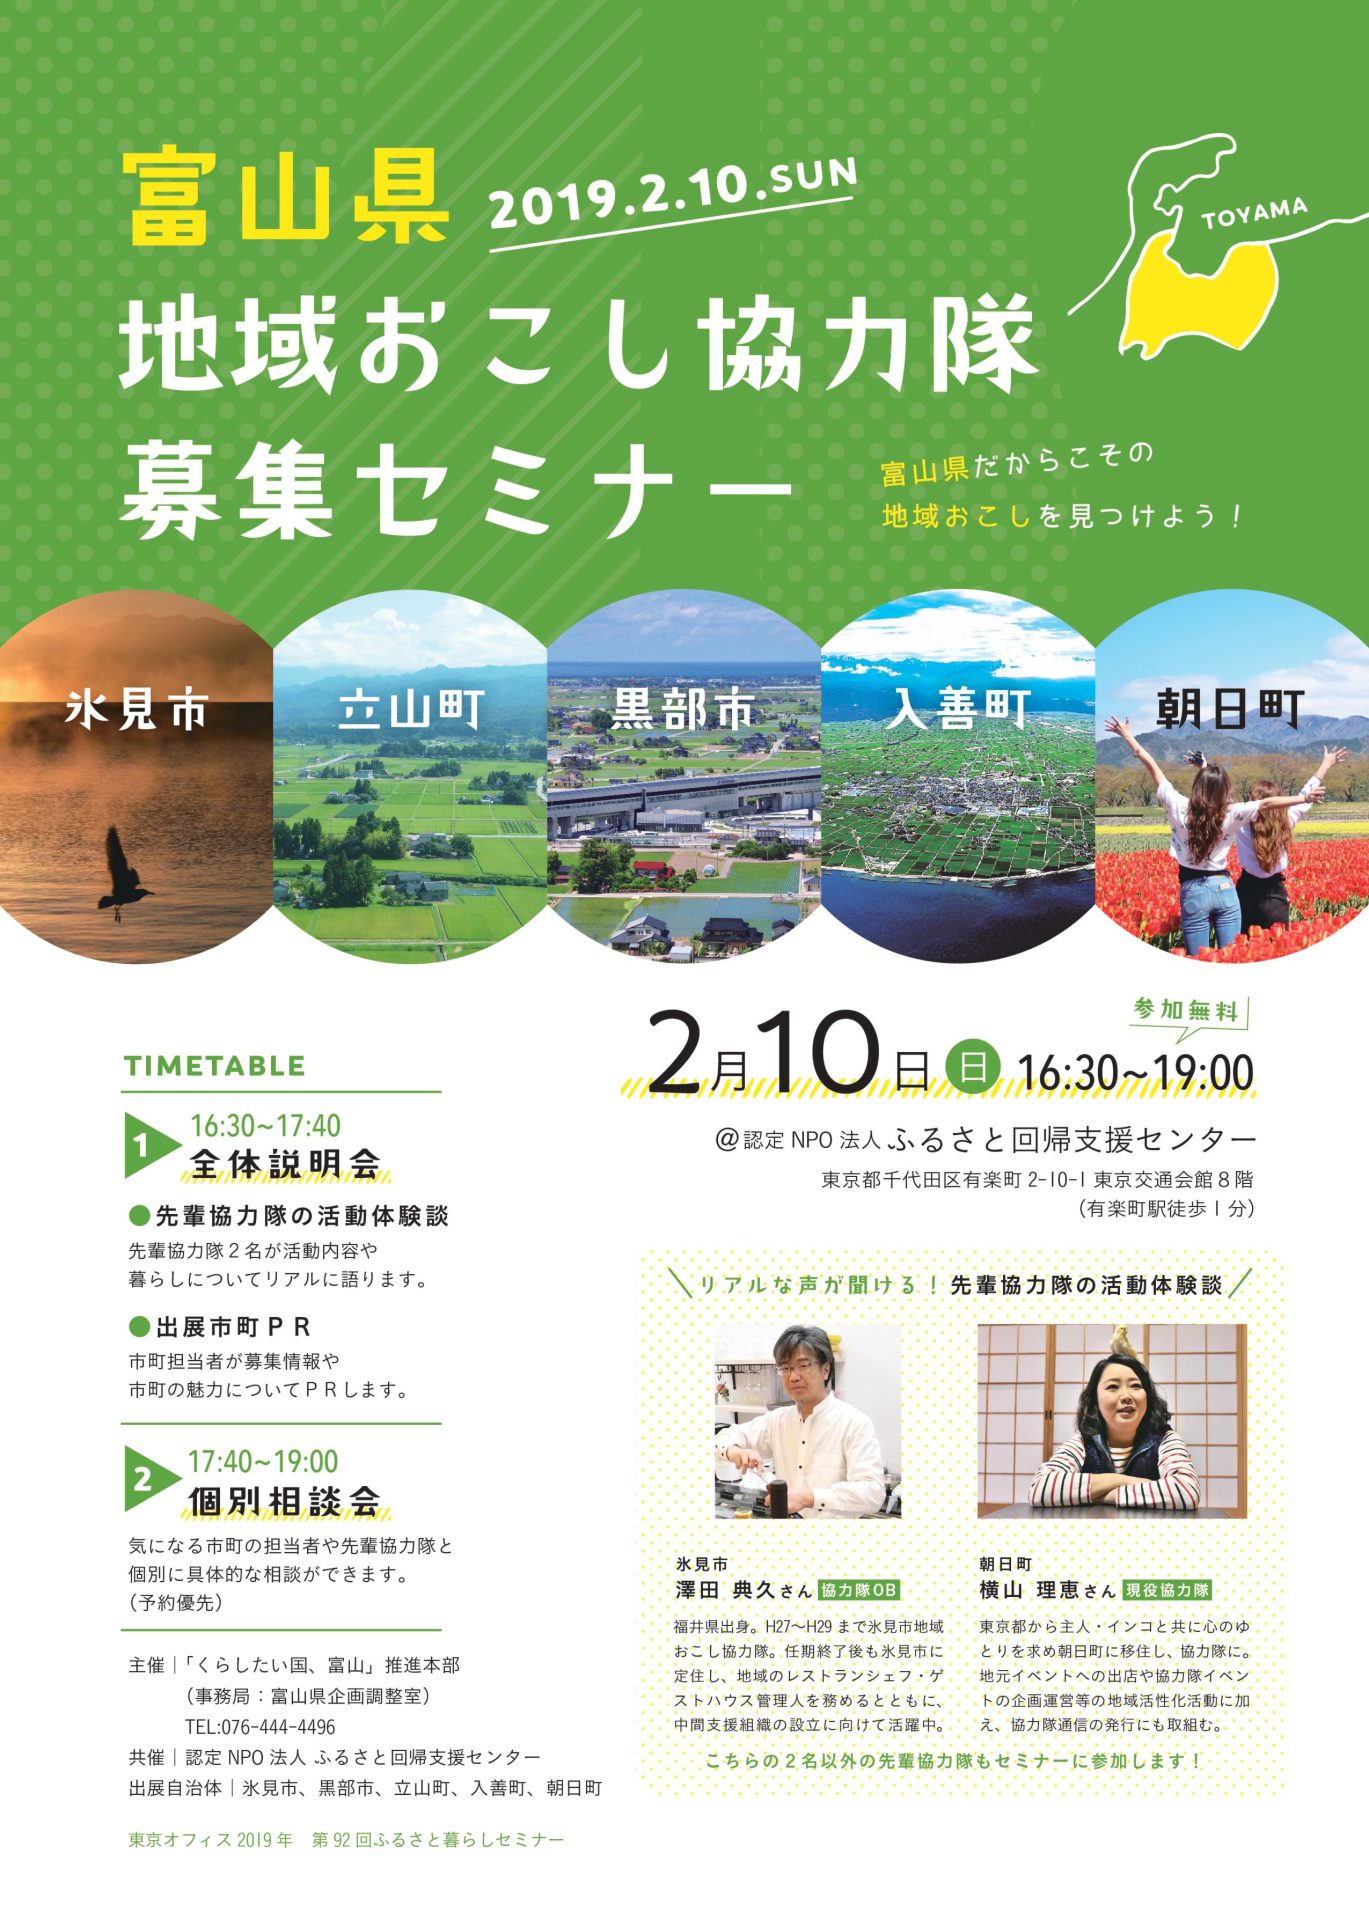 富山県だからこその｢地域おこし｣を見つけよう！富山県地域おこし協力隊募集セミナー | 移住関連イベント情報